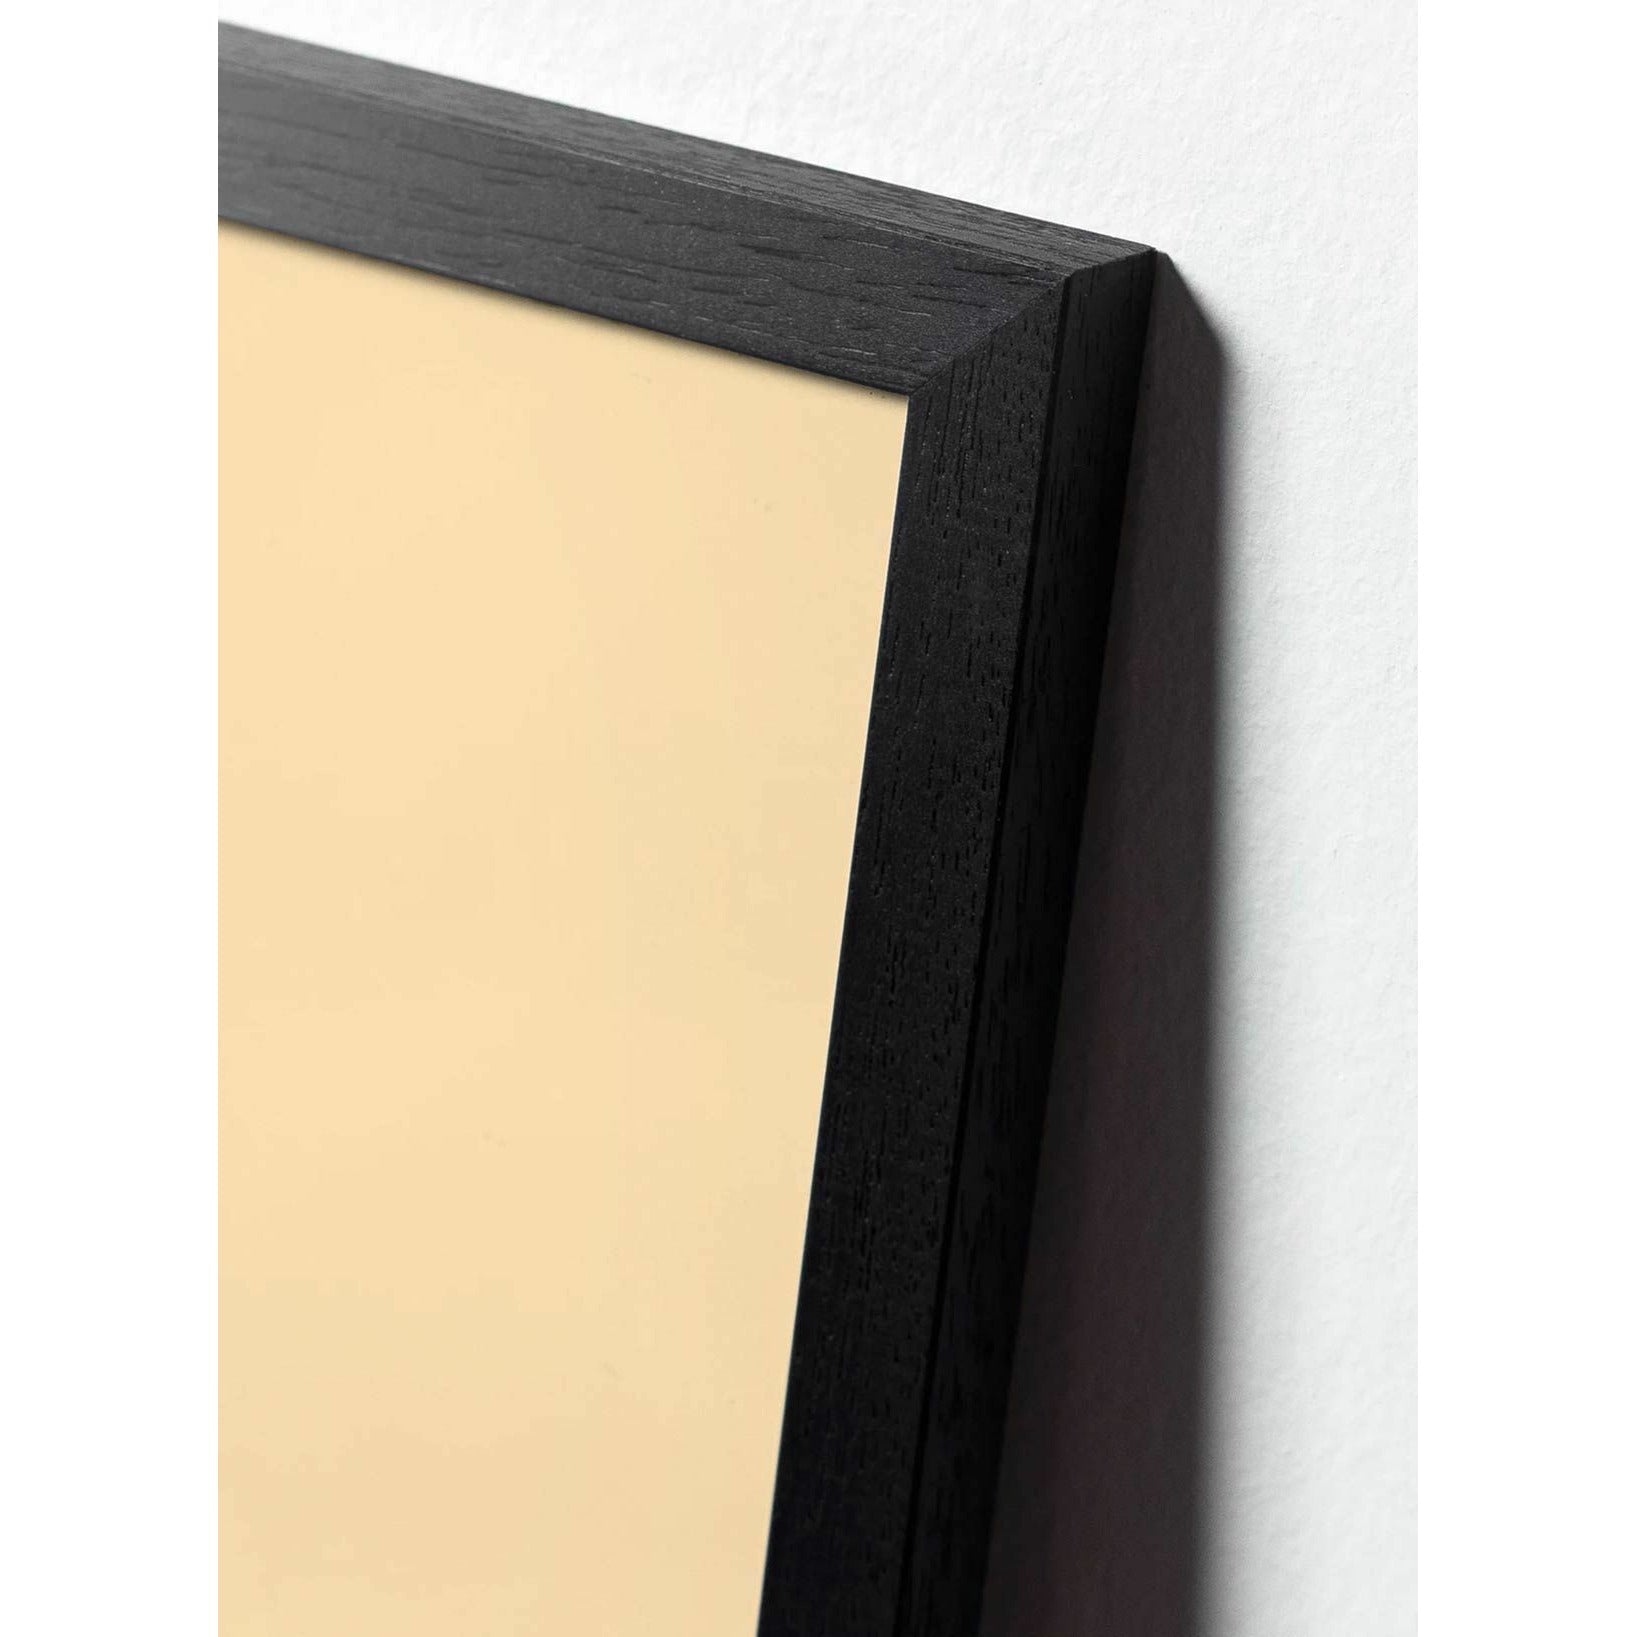 brainchild Affiche classique de fourmi, cadre en bois laqué noir 70x100 cm, fond blanc